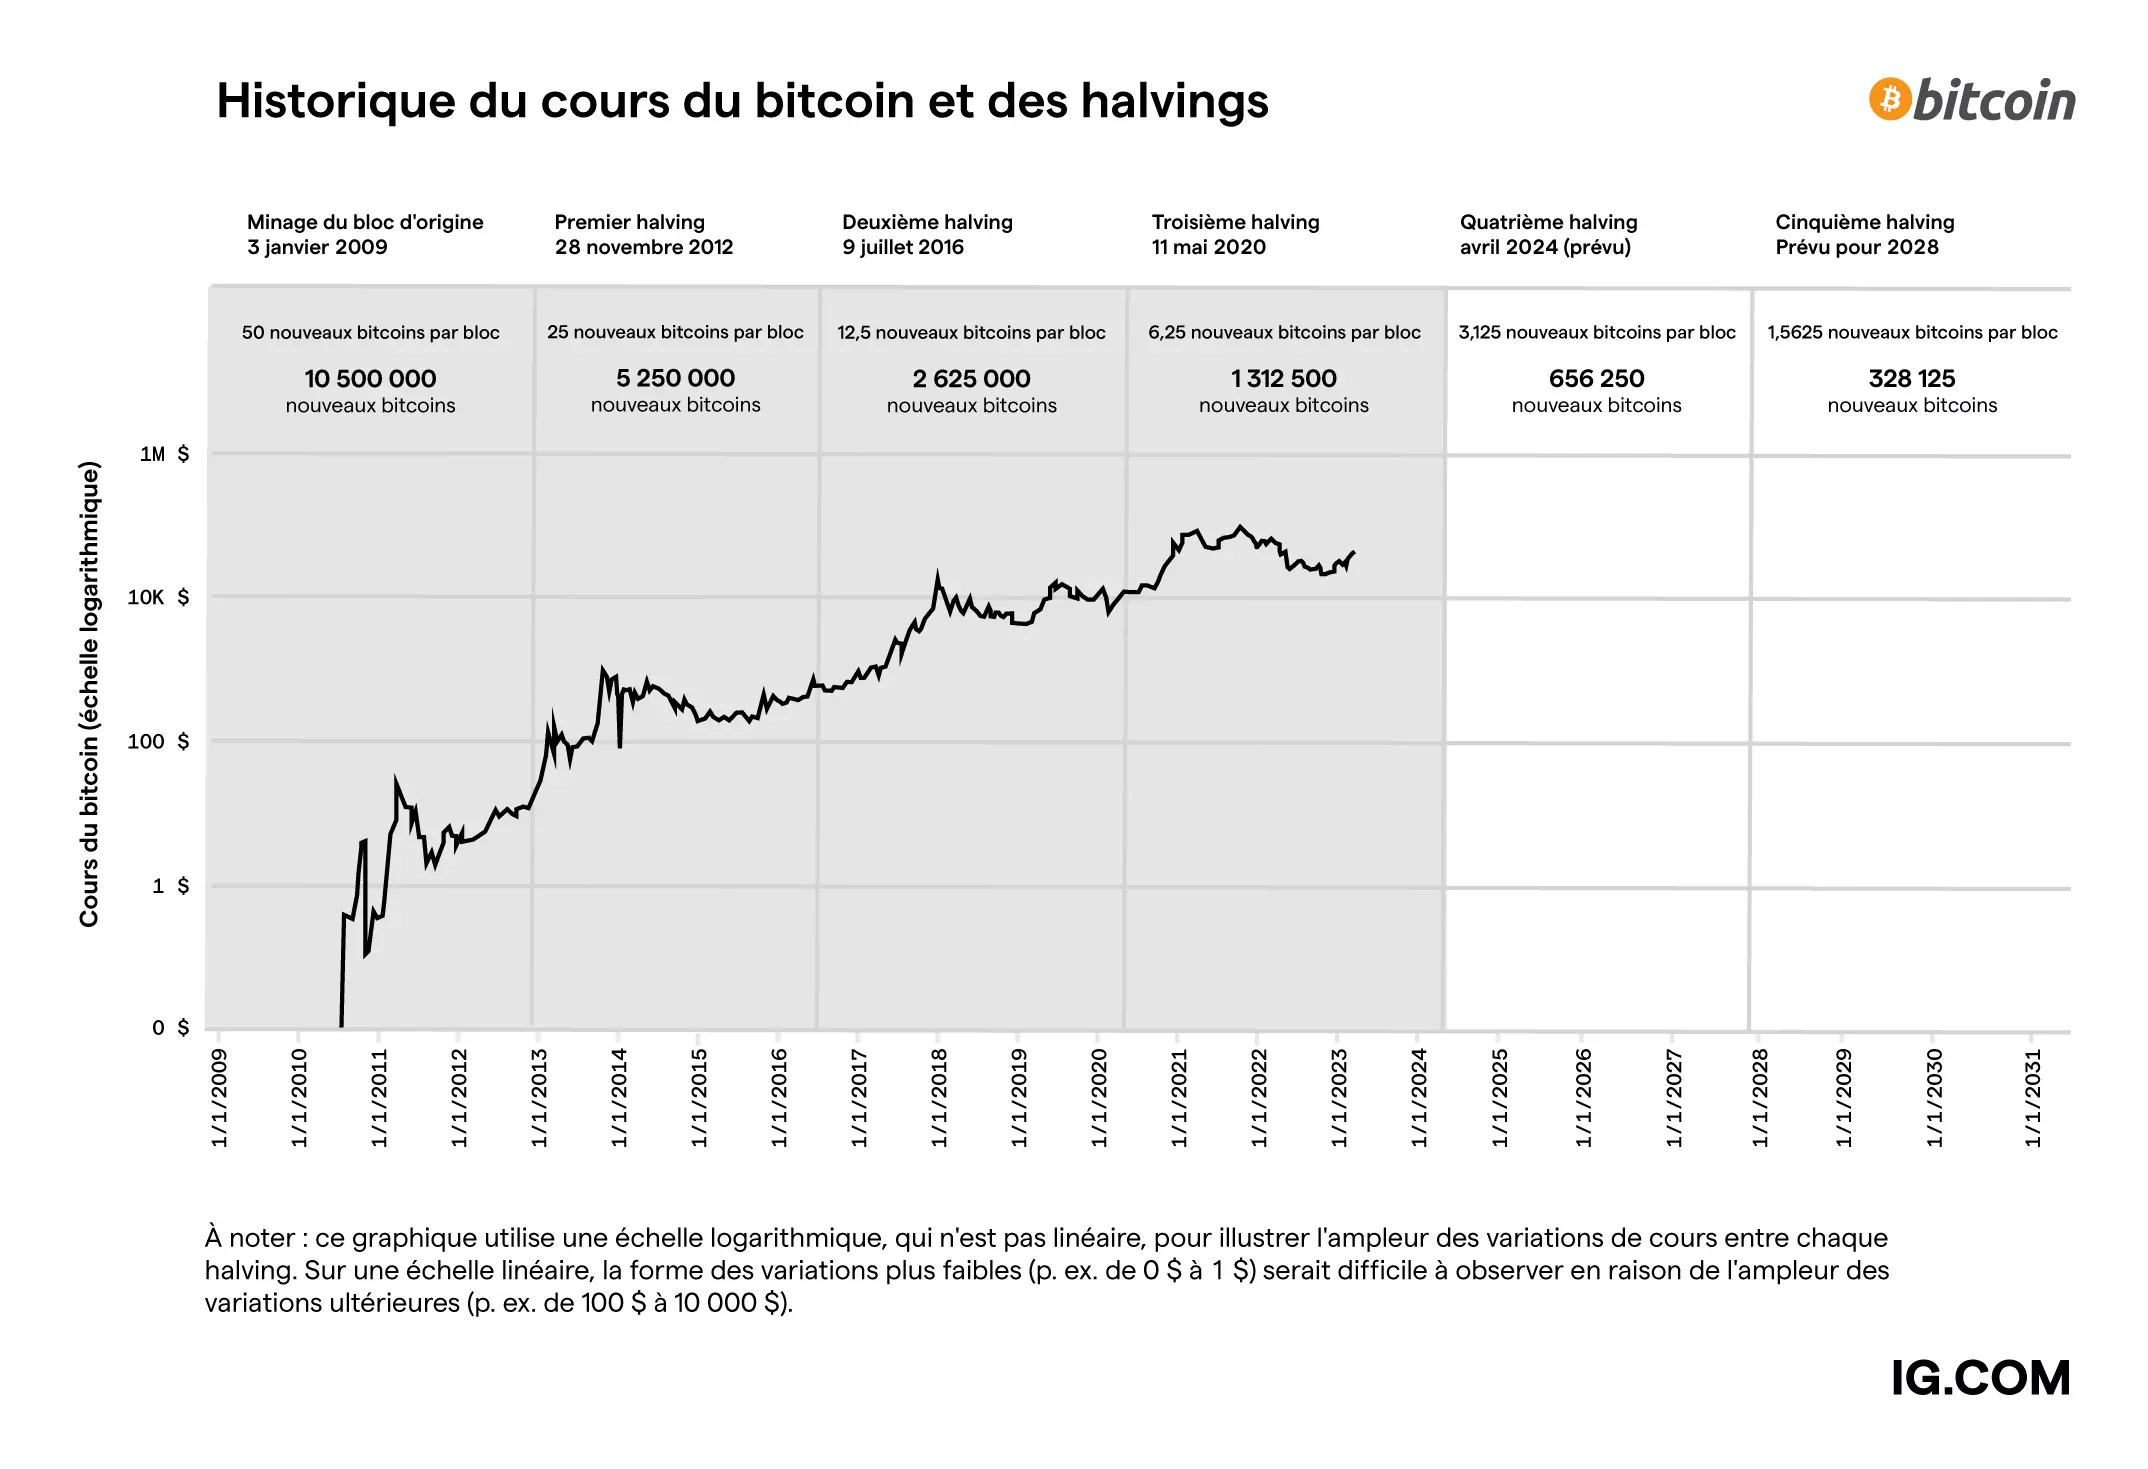 Graphique des cours du bitcoin selon les halvings